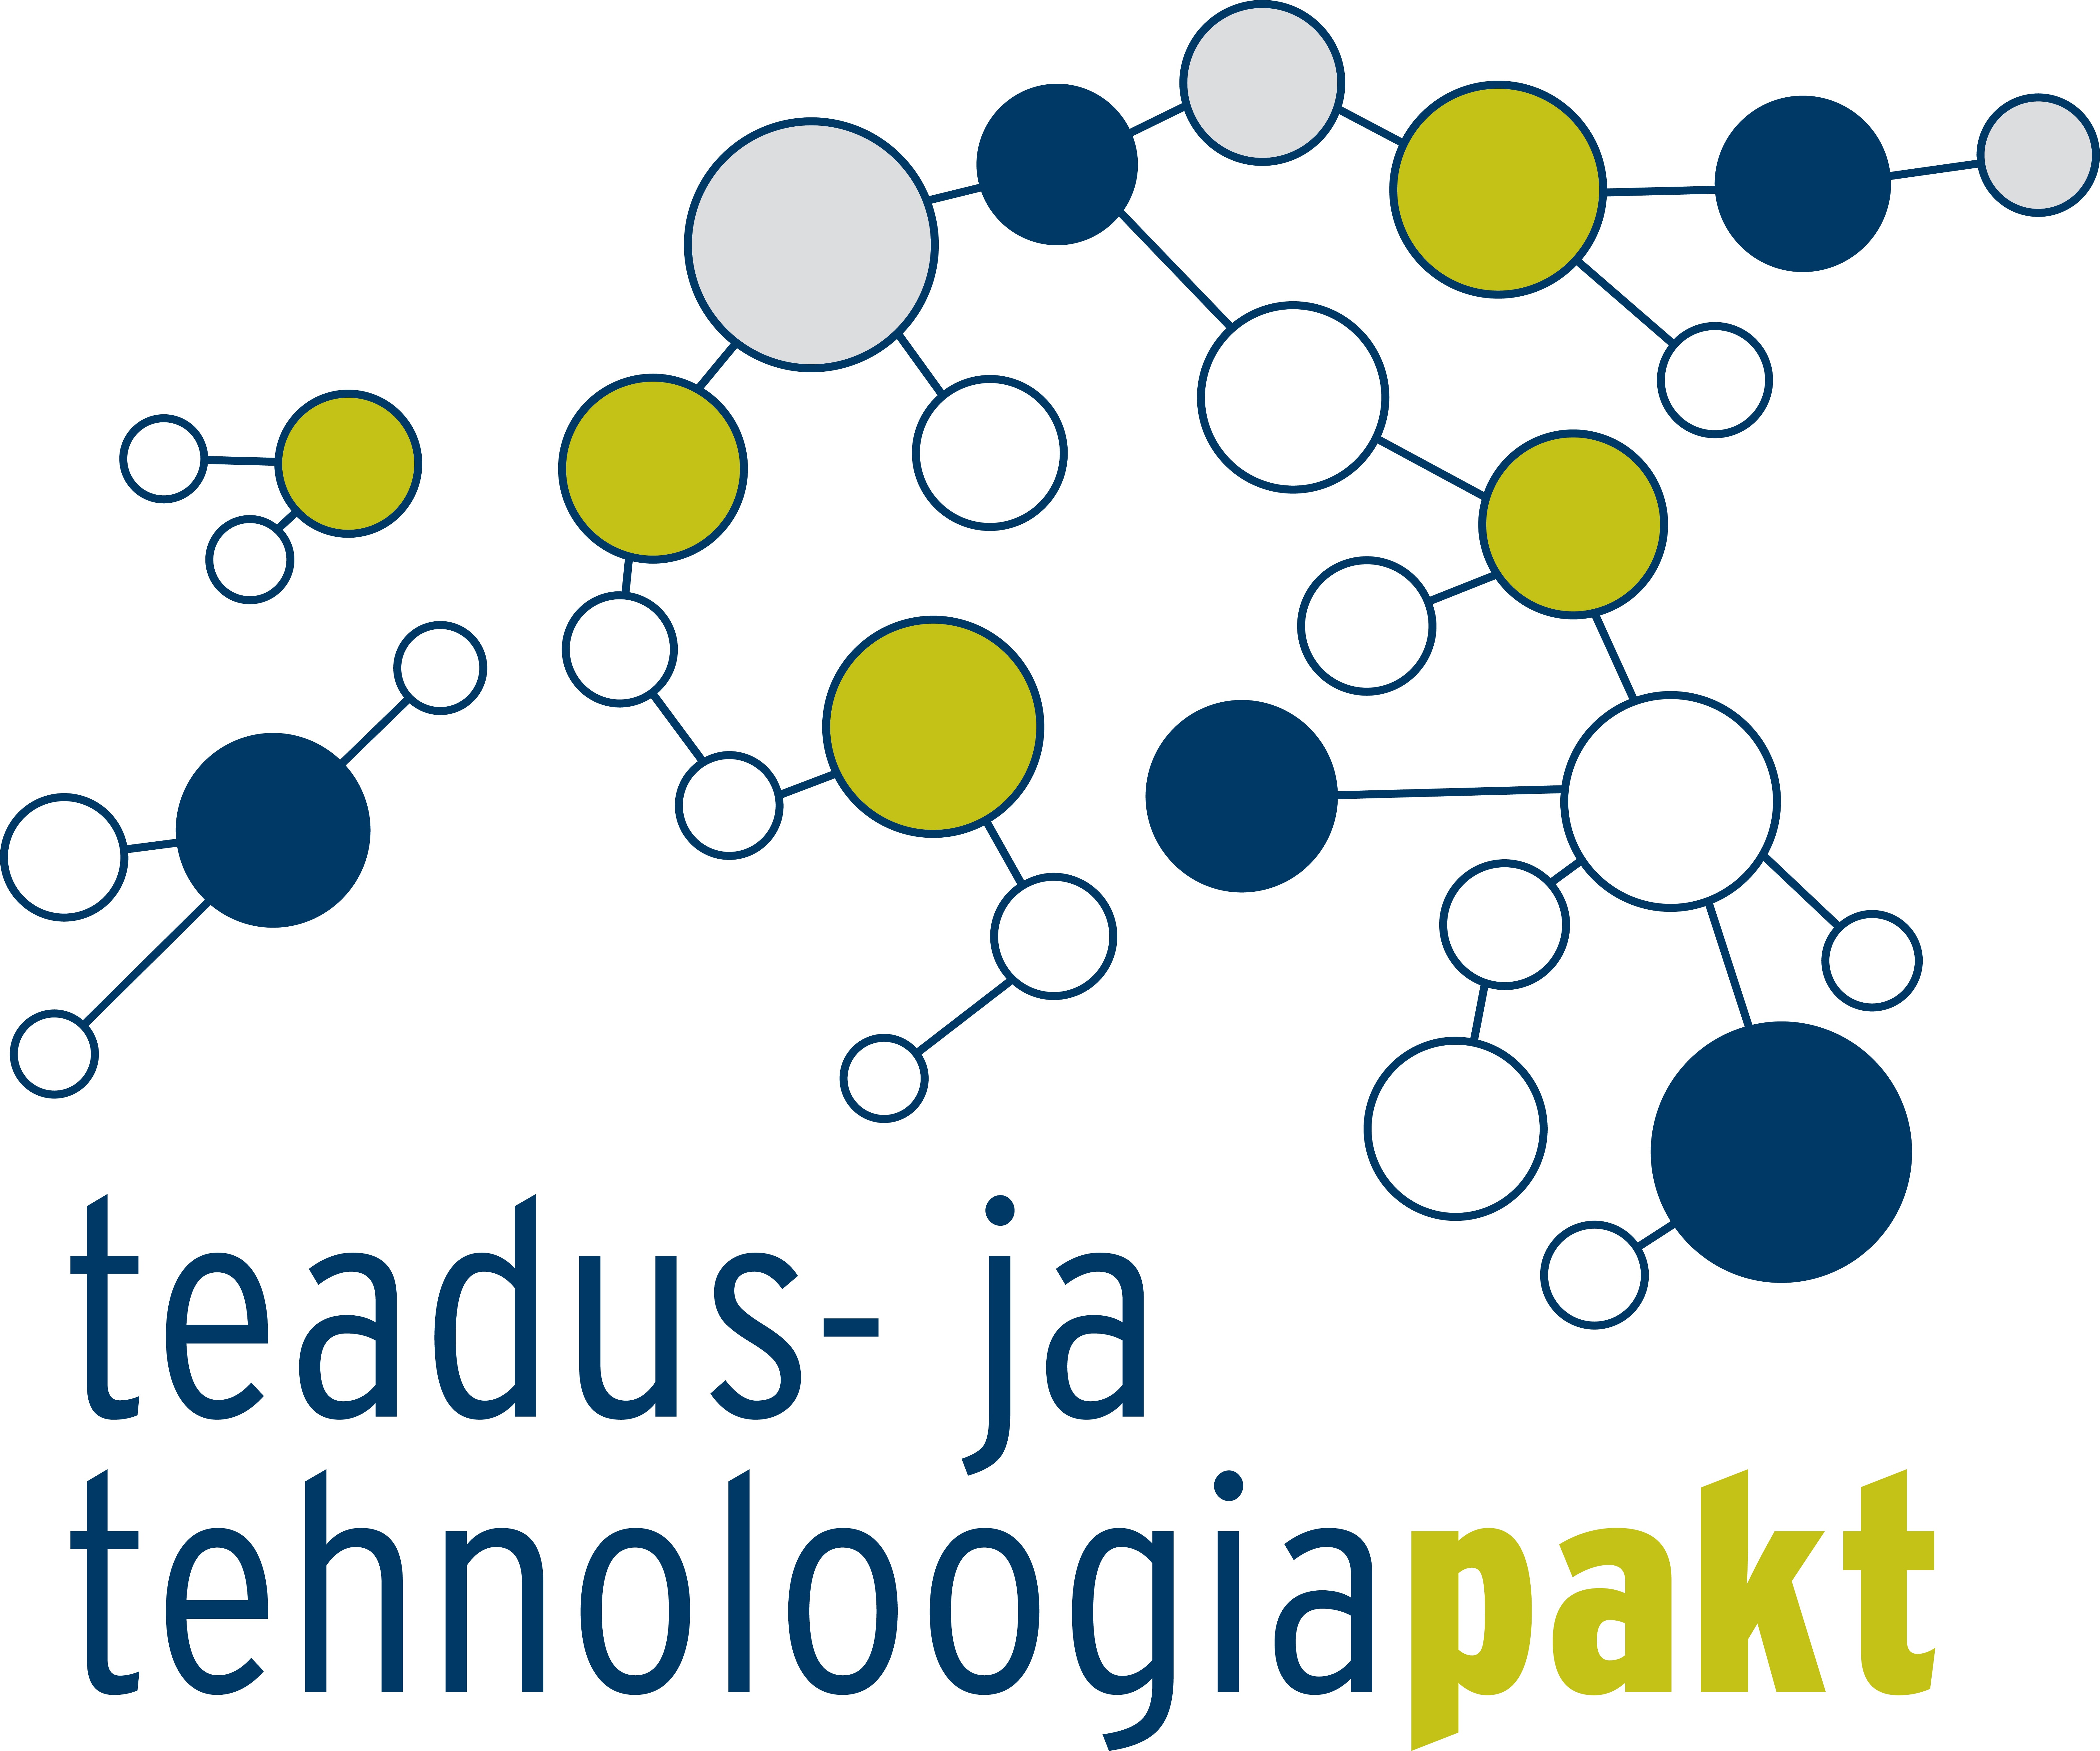 Pakti logo